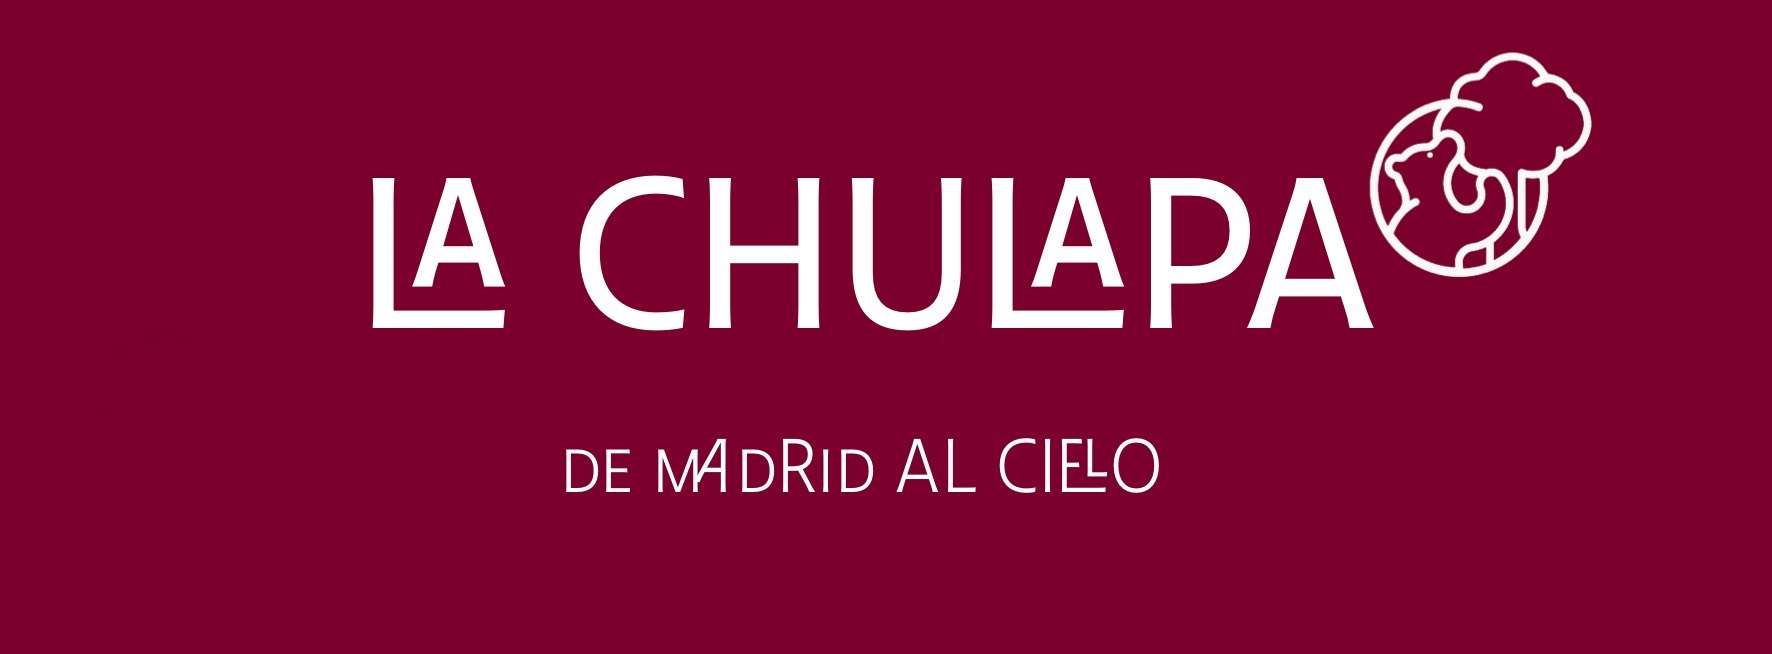 Logo de la Chulapa